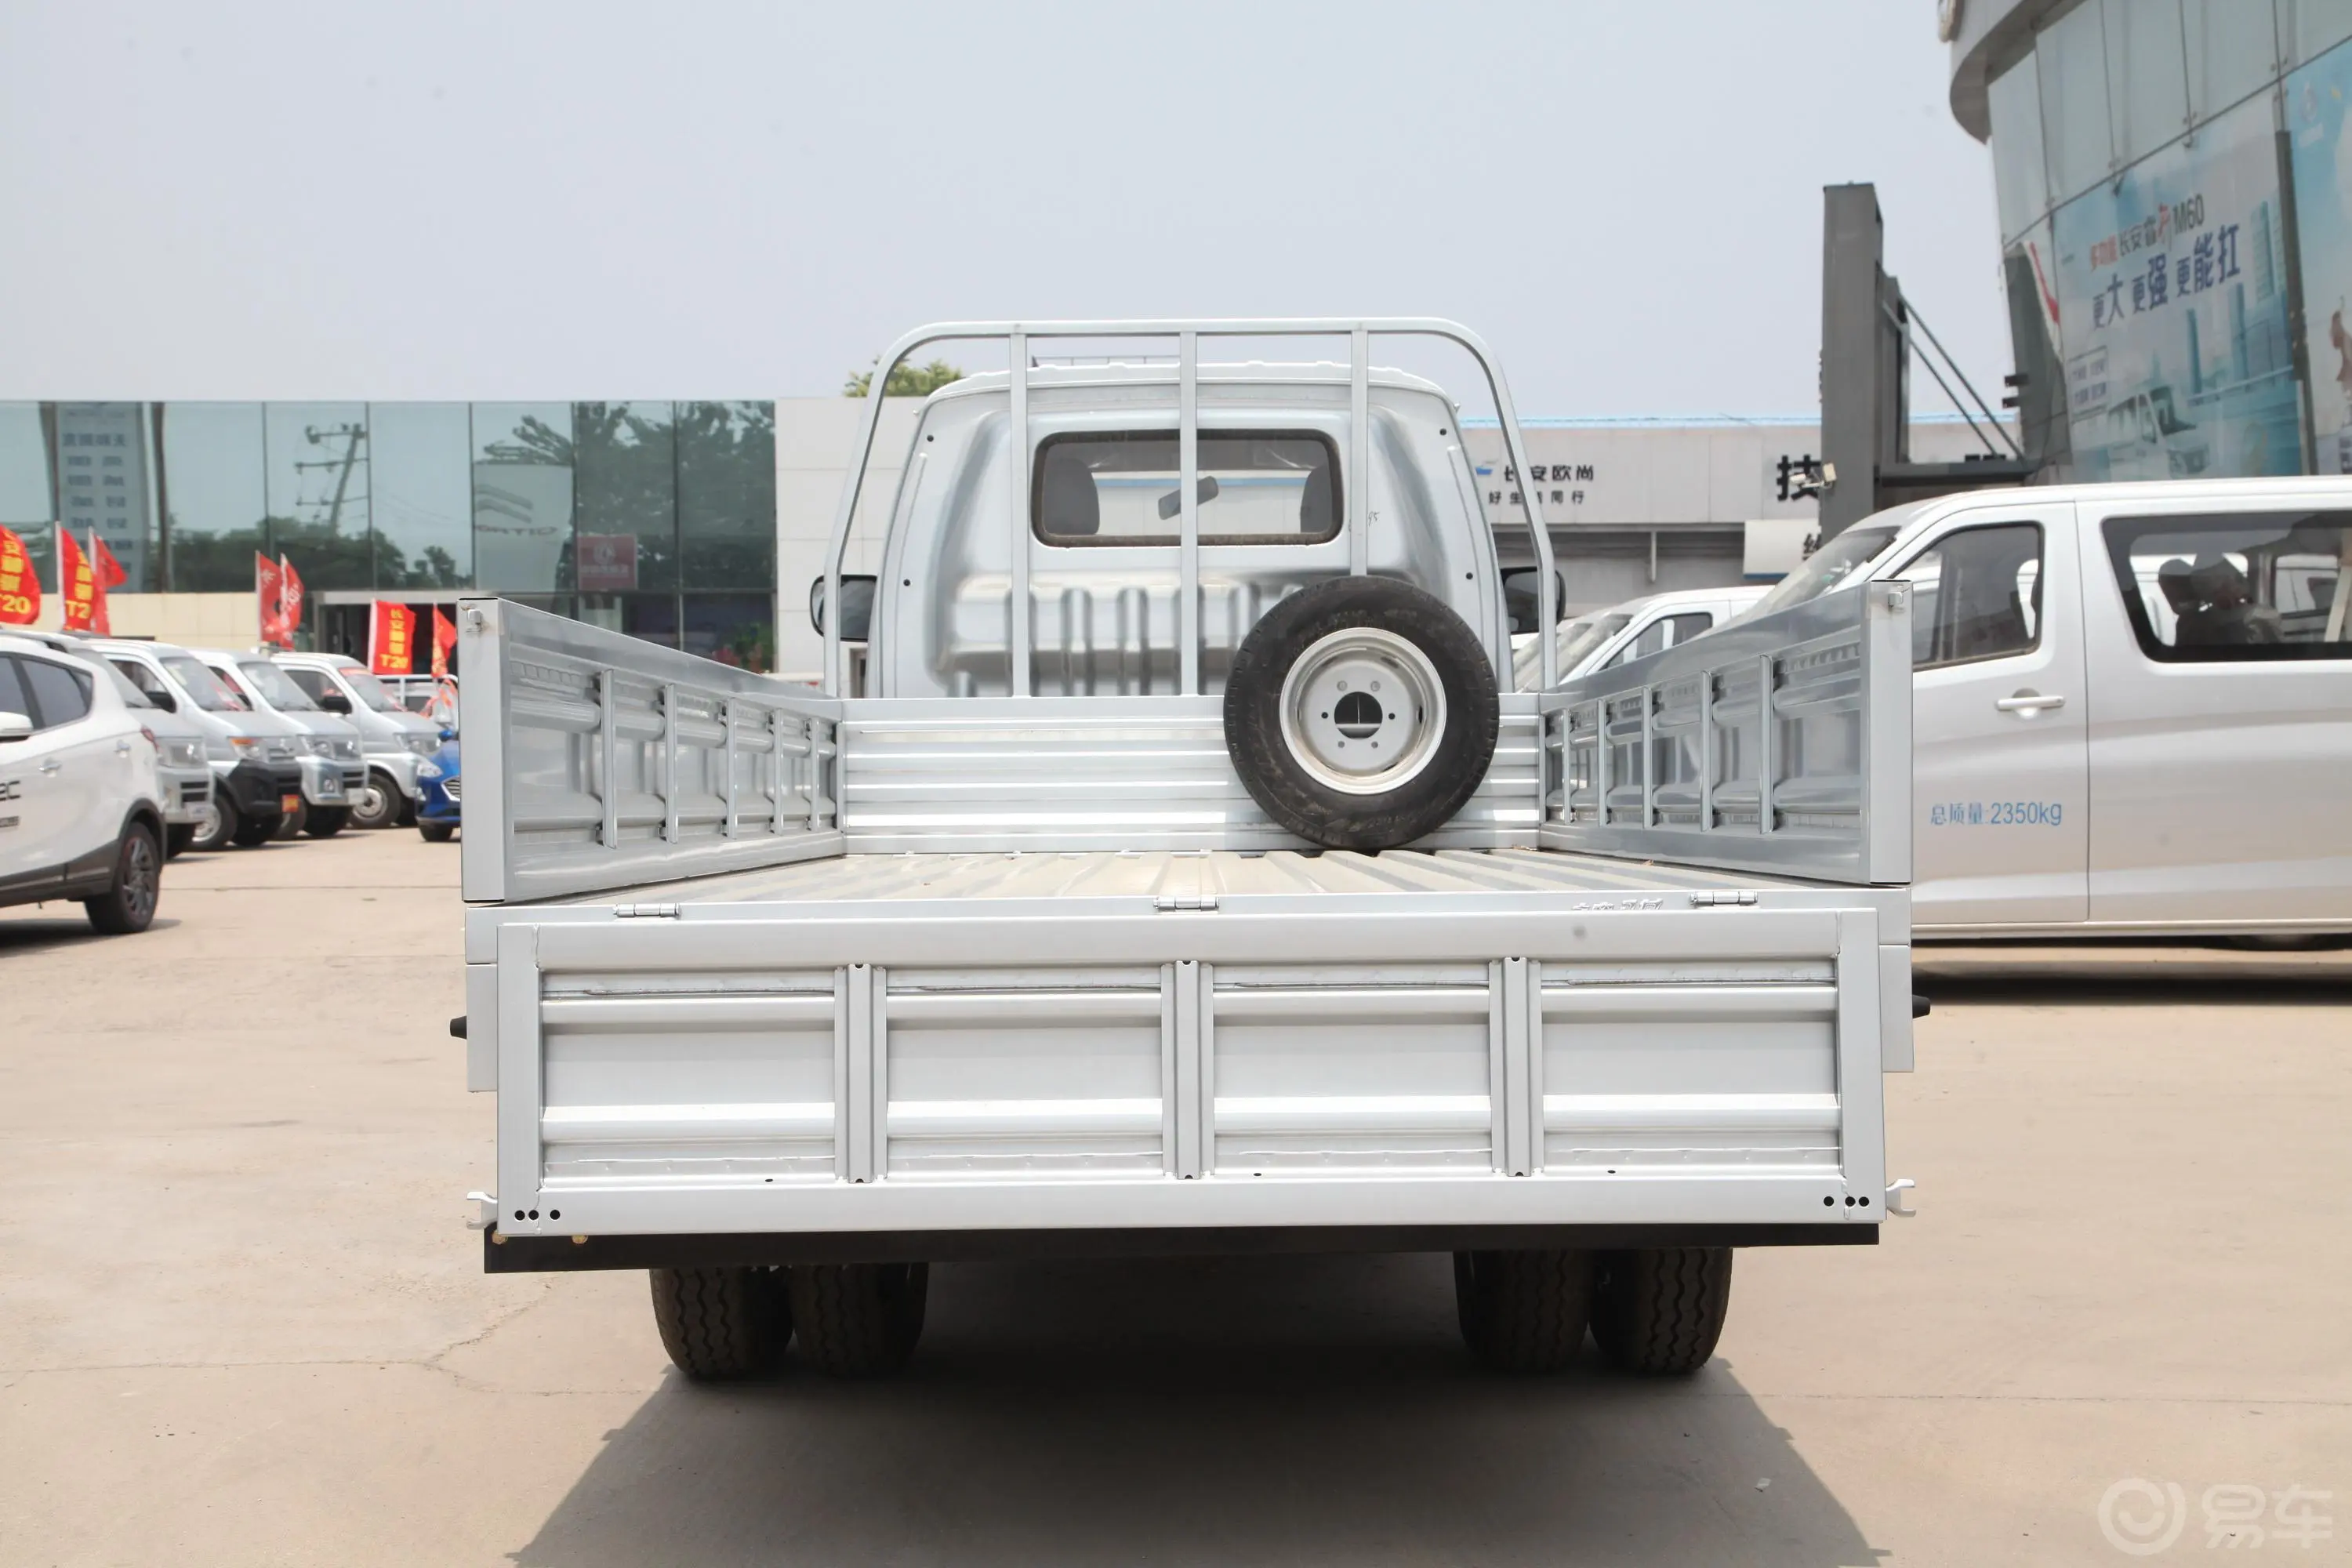 神骐T201.6L 手动 单排标准式运输车 标准型 CNG 国VI空间